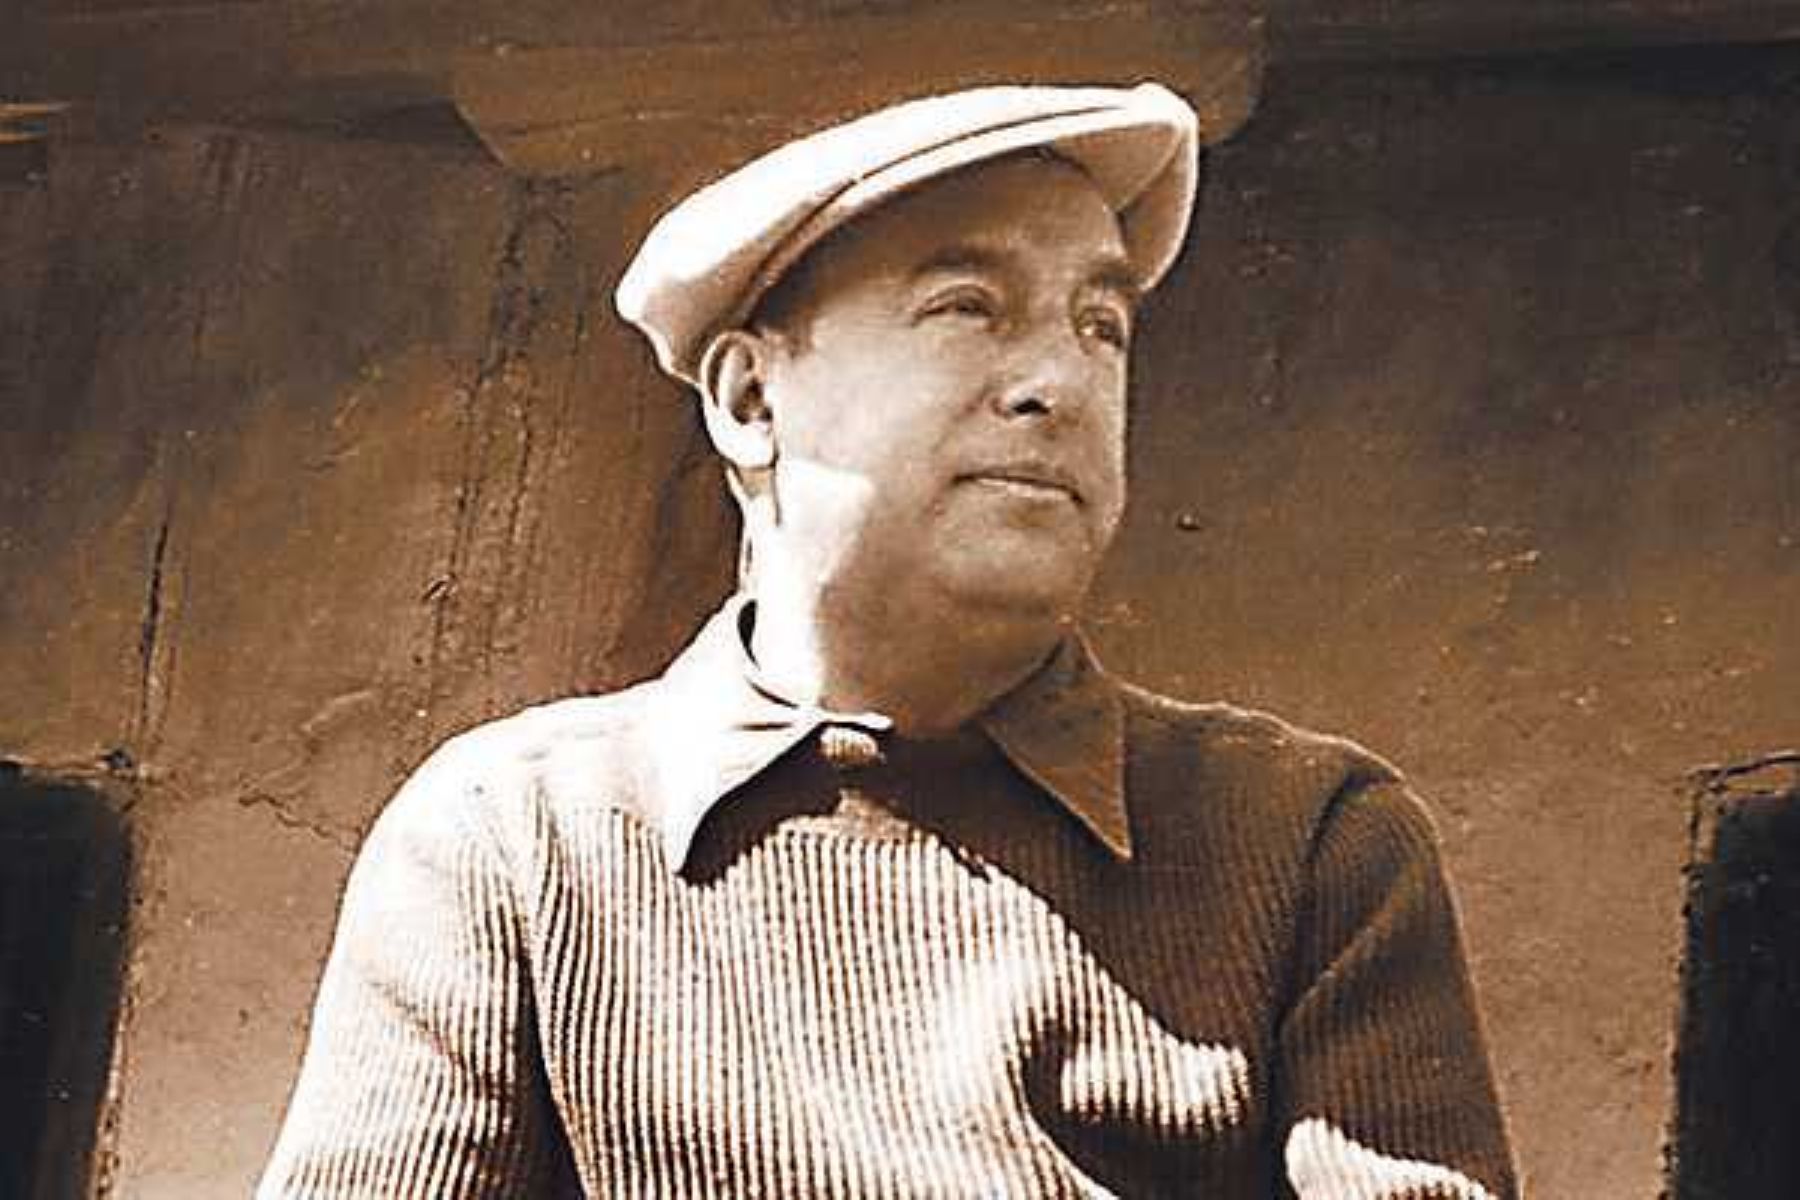 Pablo Neruda murió envenenado por la dictadura de “Pinochet” en Chile: Científicos confirman teoría del asesinato